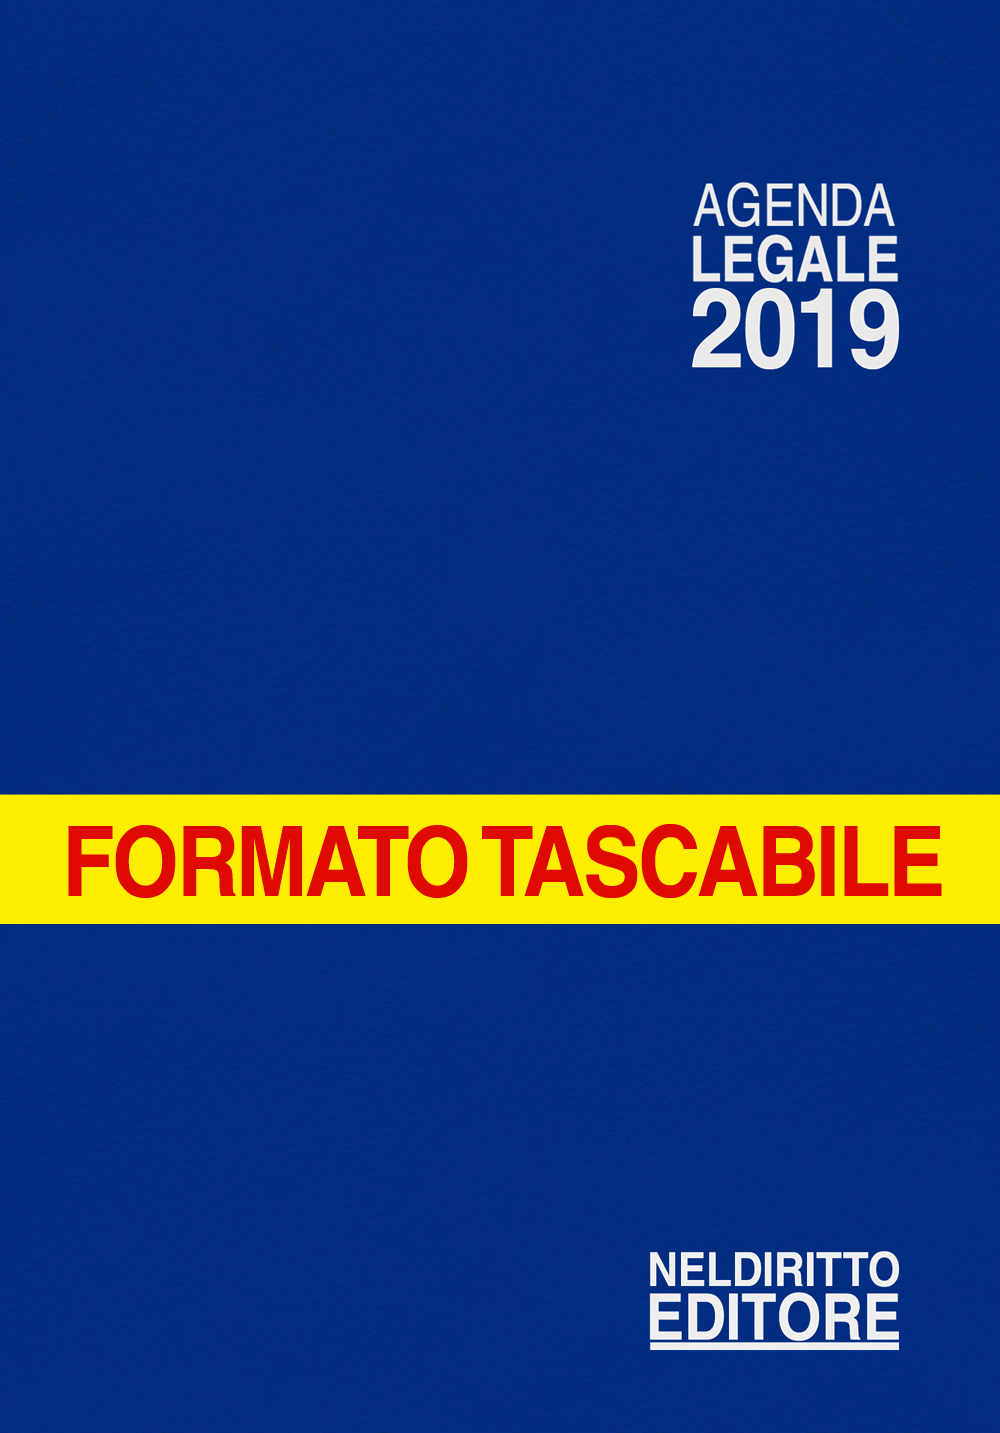 AGENDA LEGALE 2019 - Formato tascabile - colore BLU